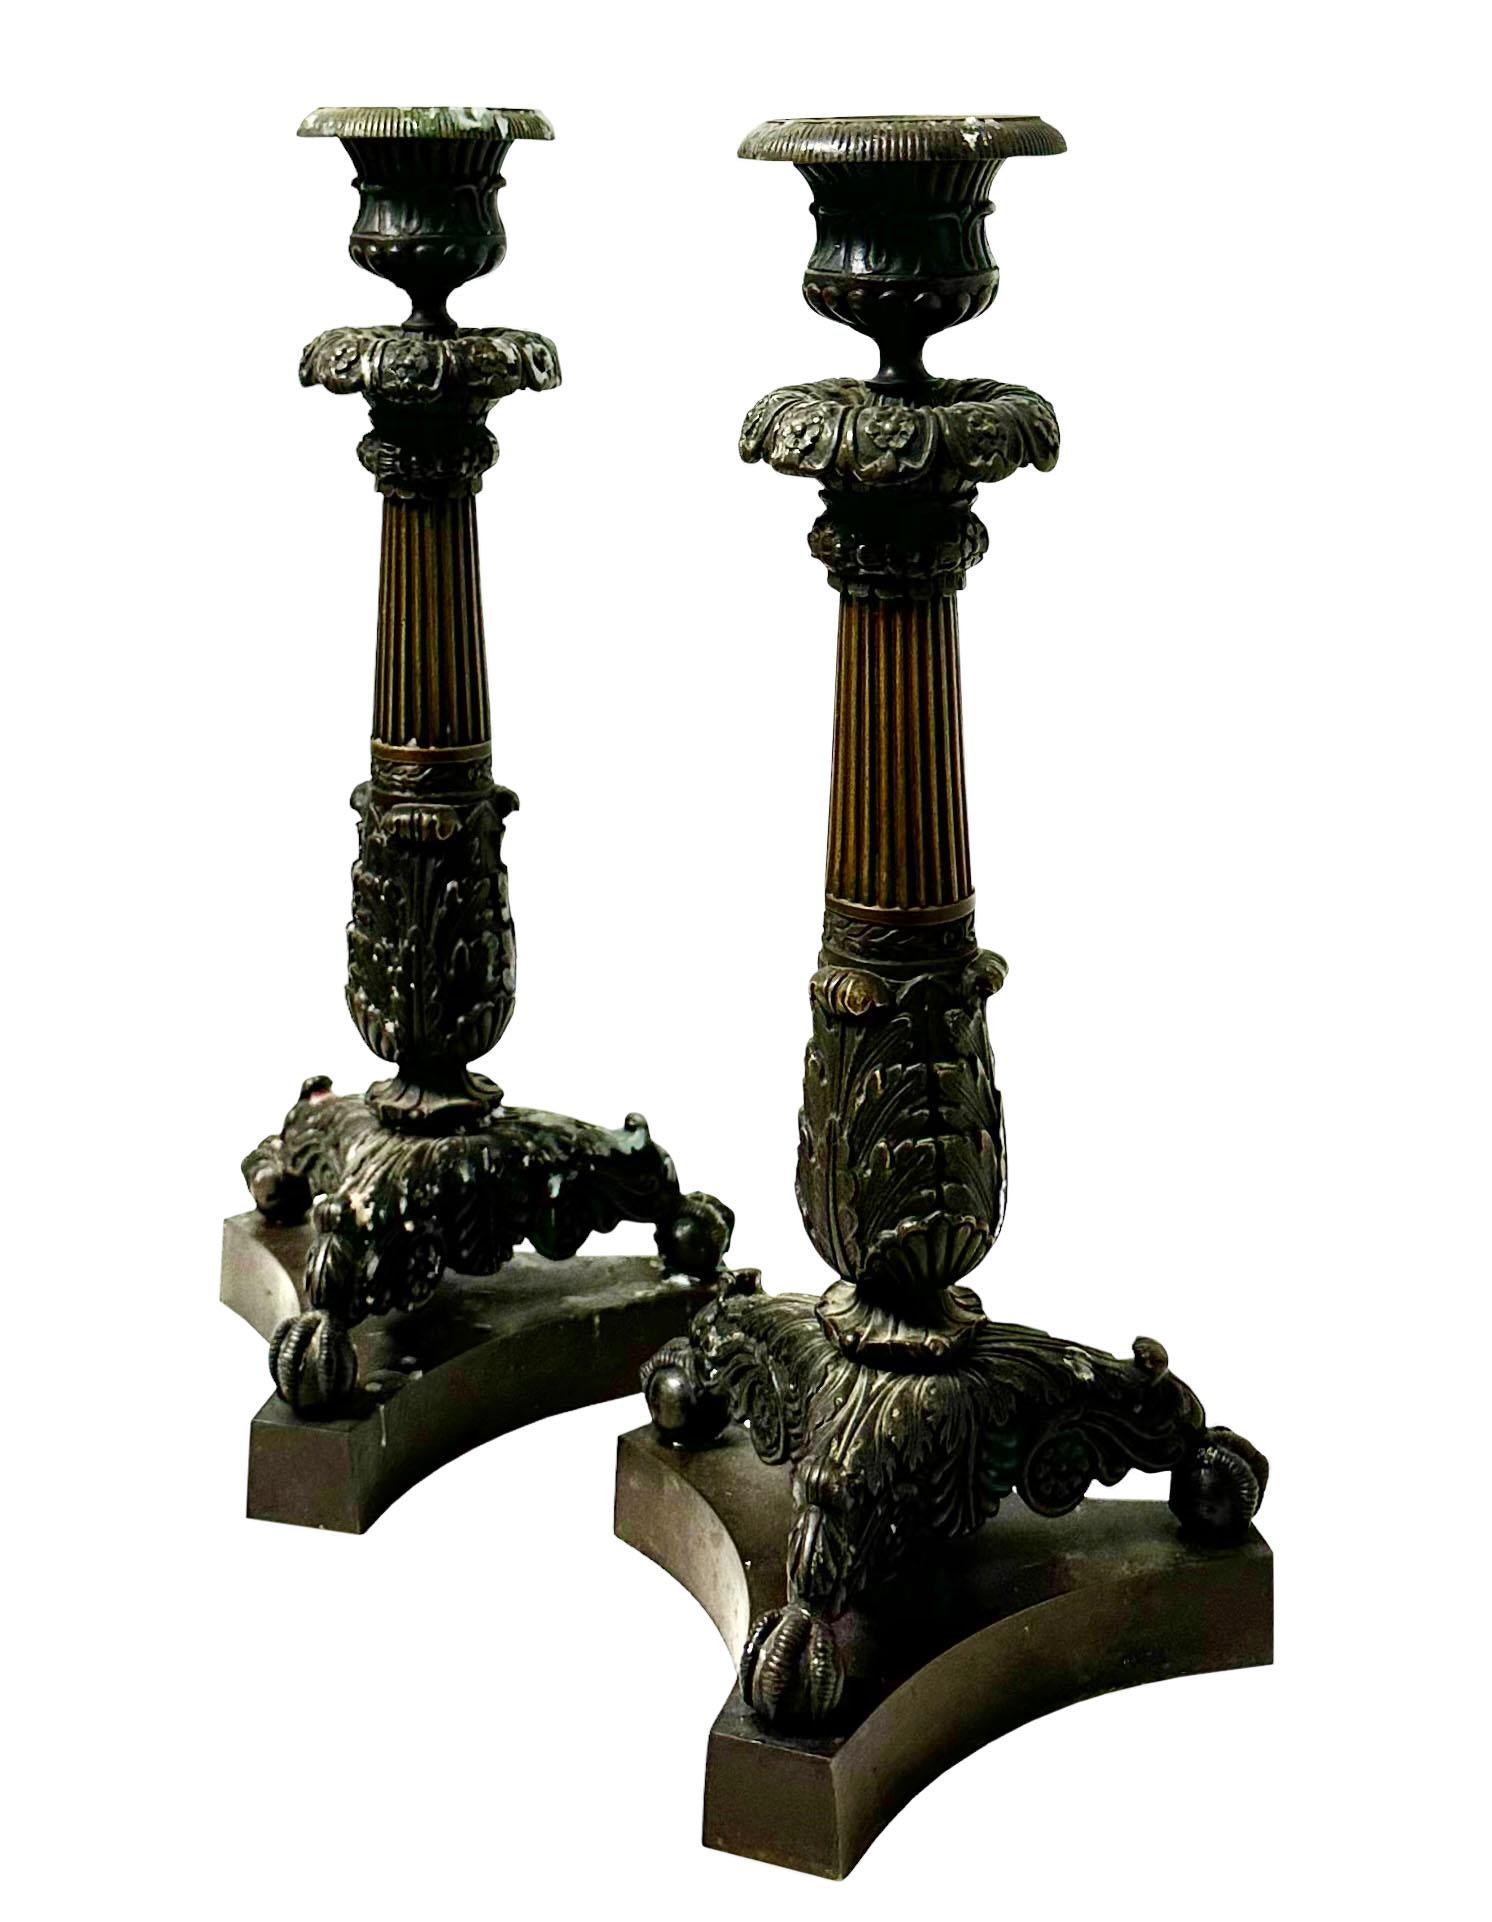 Ein Paar massiver französischer Kerzenleuchter aus dem frühen Kaiserreich mit dunkler Originalpatina. Sie sind in sehr gutem Zustand, originale Bogenschüsse. Das Einzige, was fehlt, ist ein Holzklotz unter einem von ihnen, den wahrscheinlich jemand